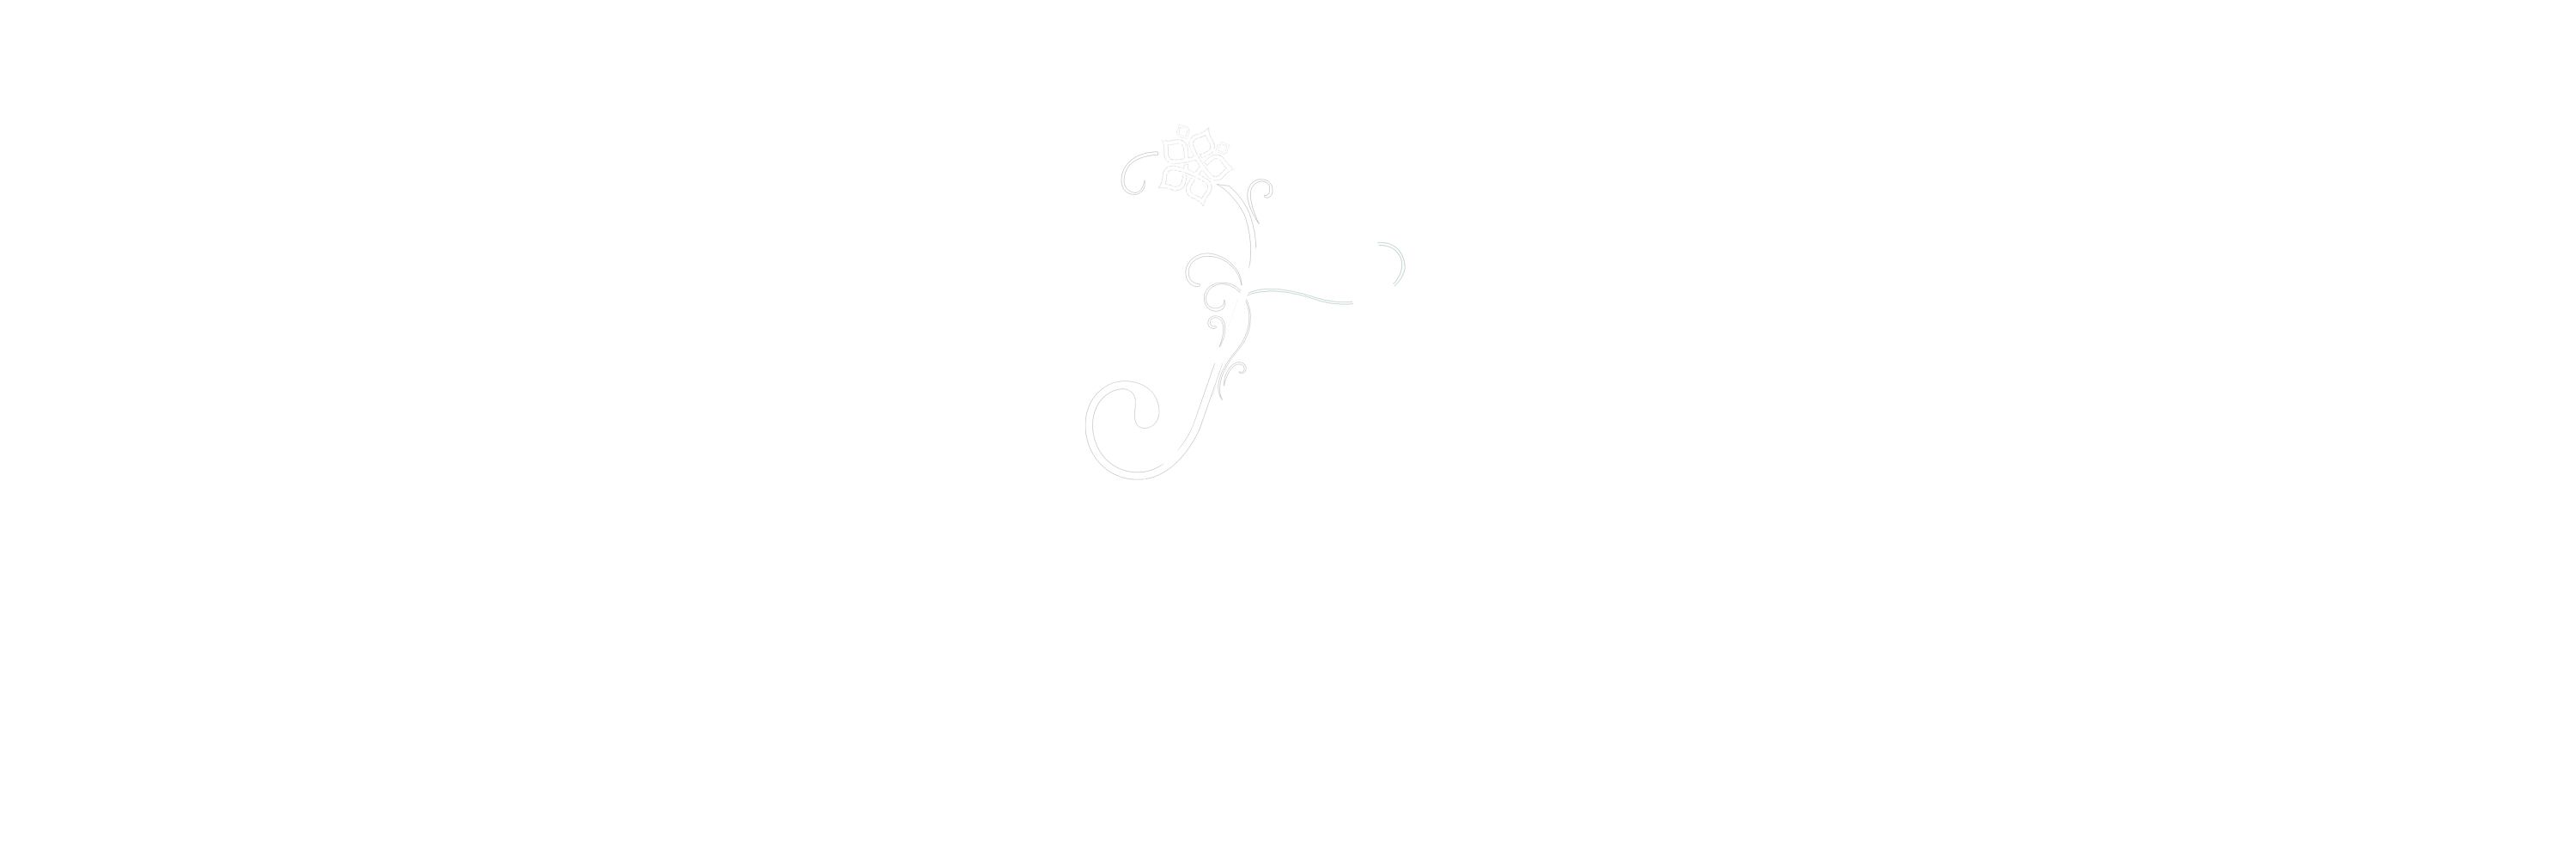 A La Mer Restaurant 